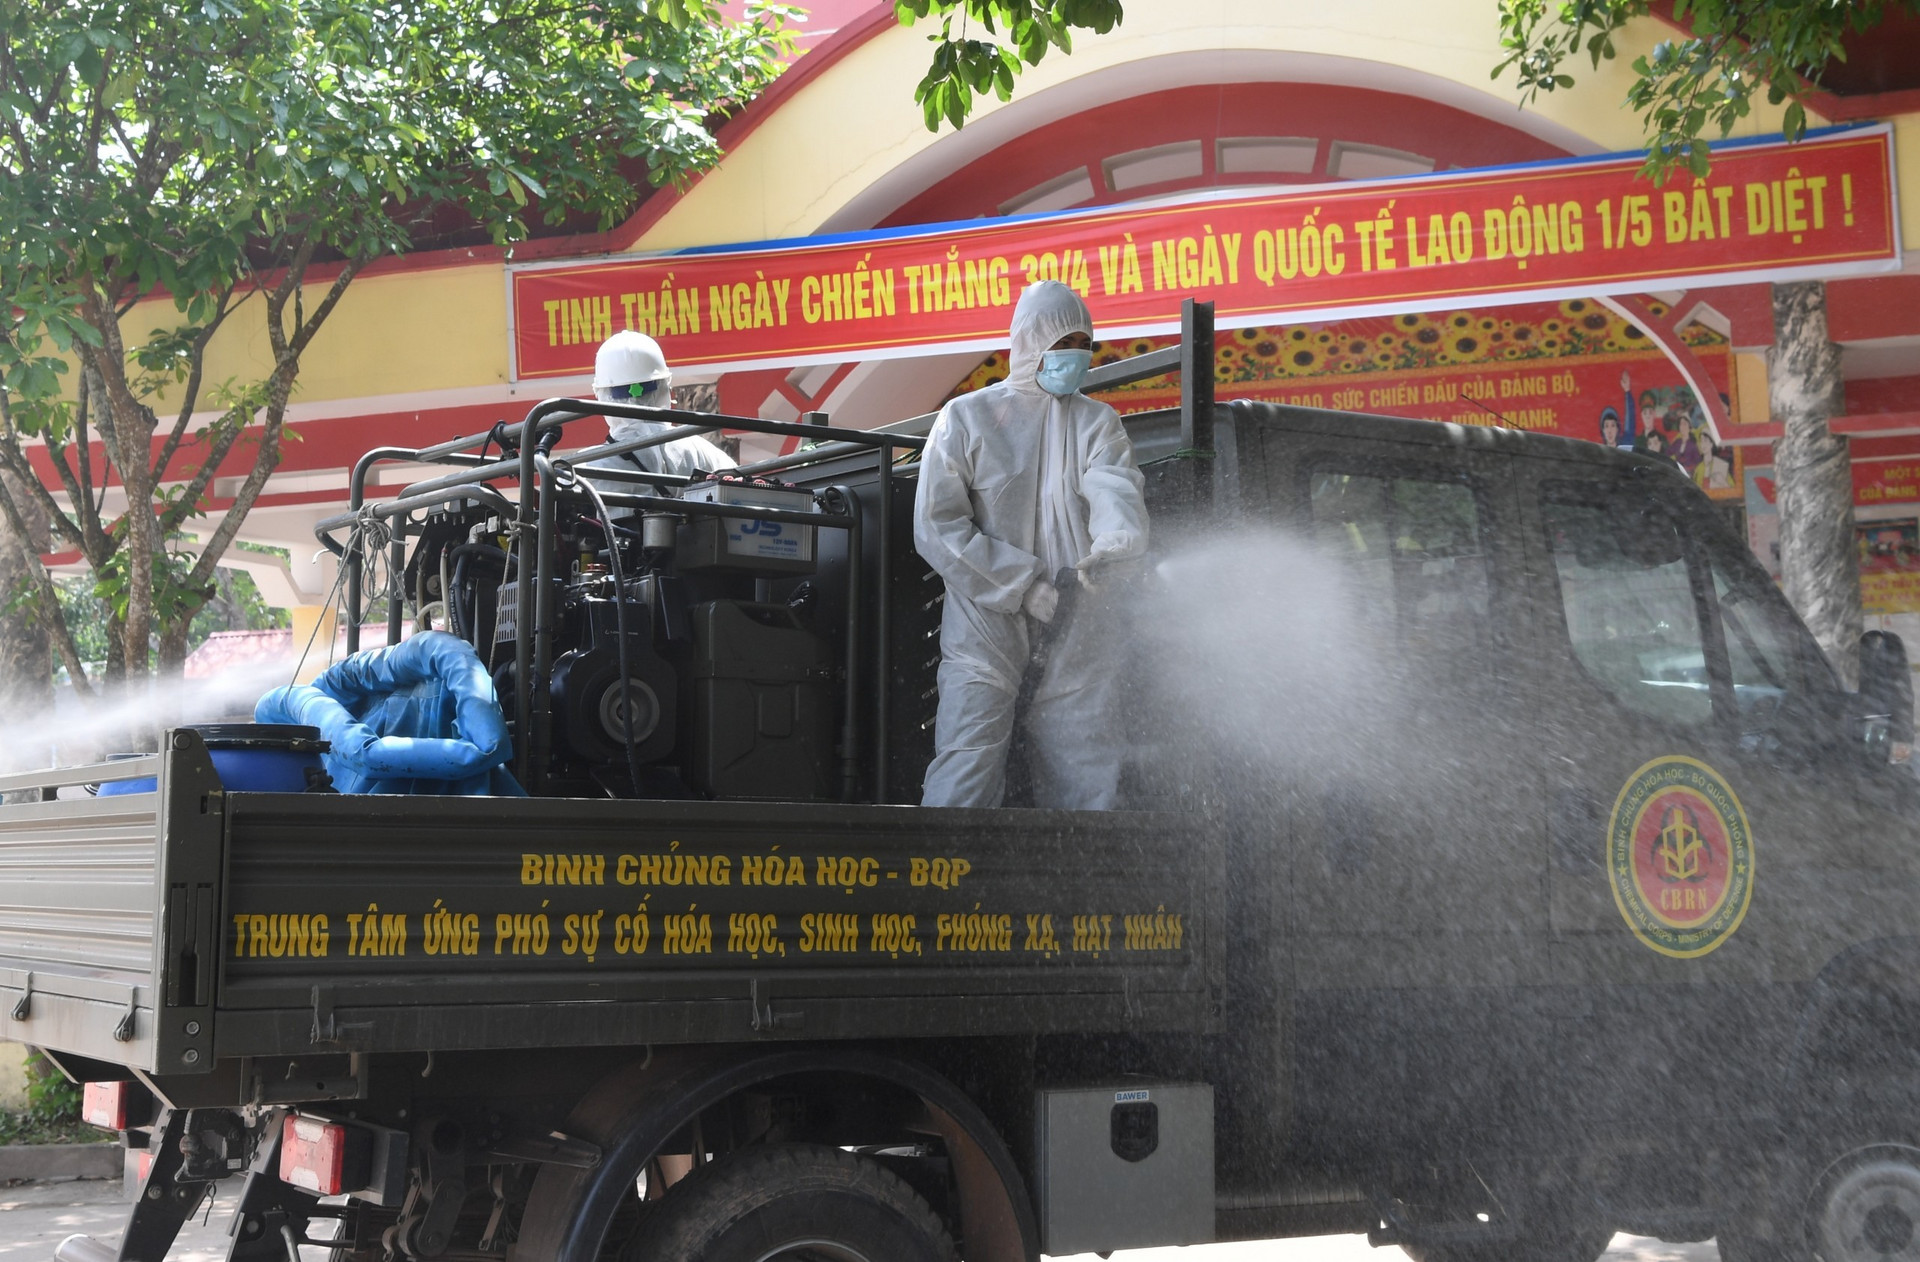 Ảnh: Dàn xe đặc chủng của quân đội khử khuẩn 4 huyện ở Bắc Giang - 9